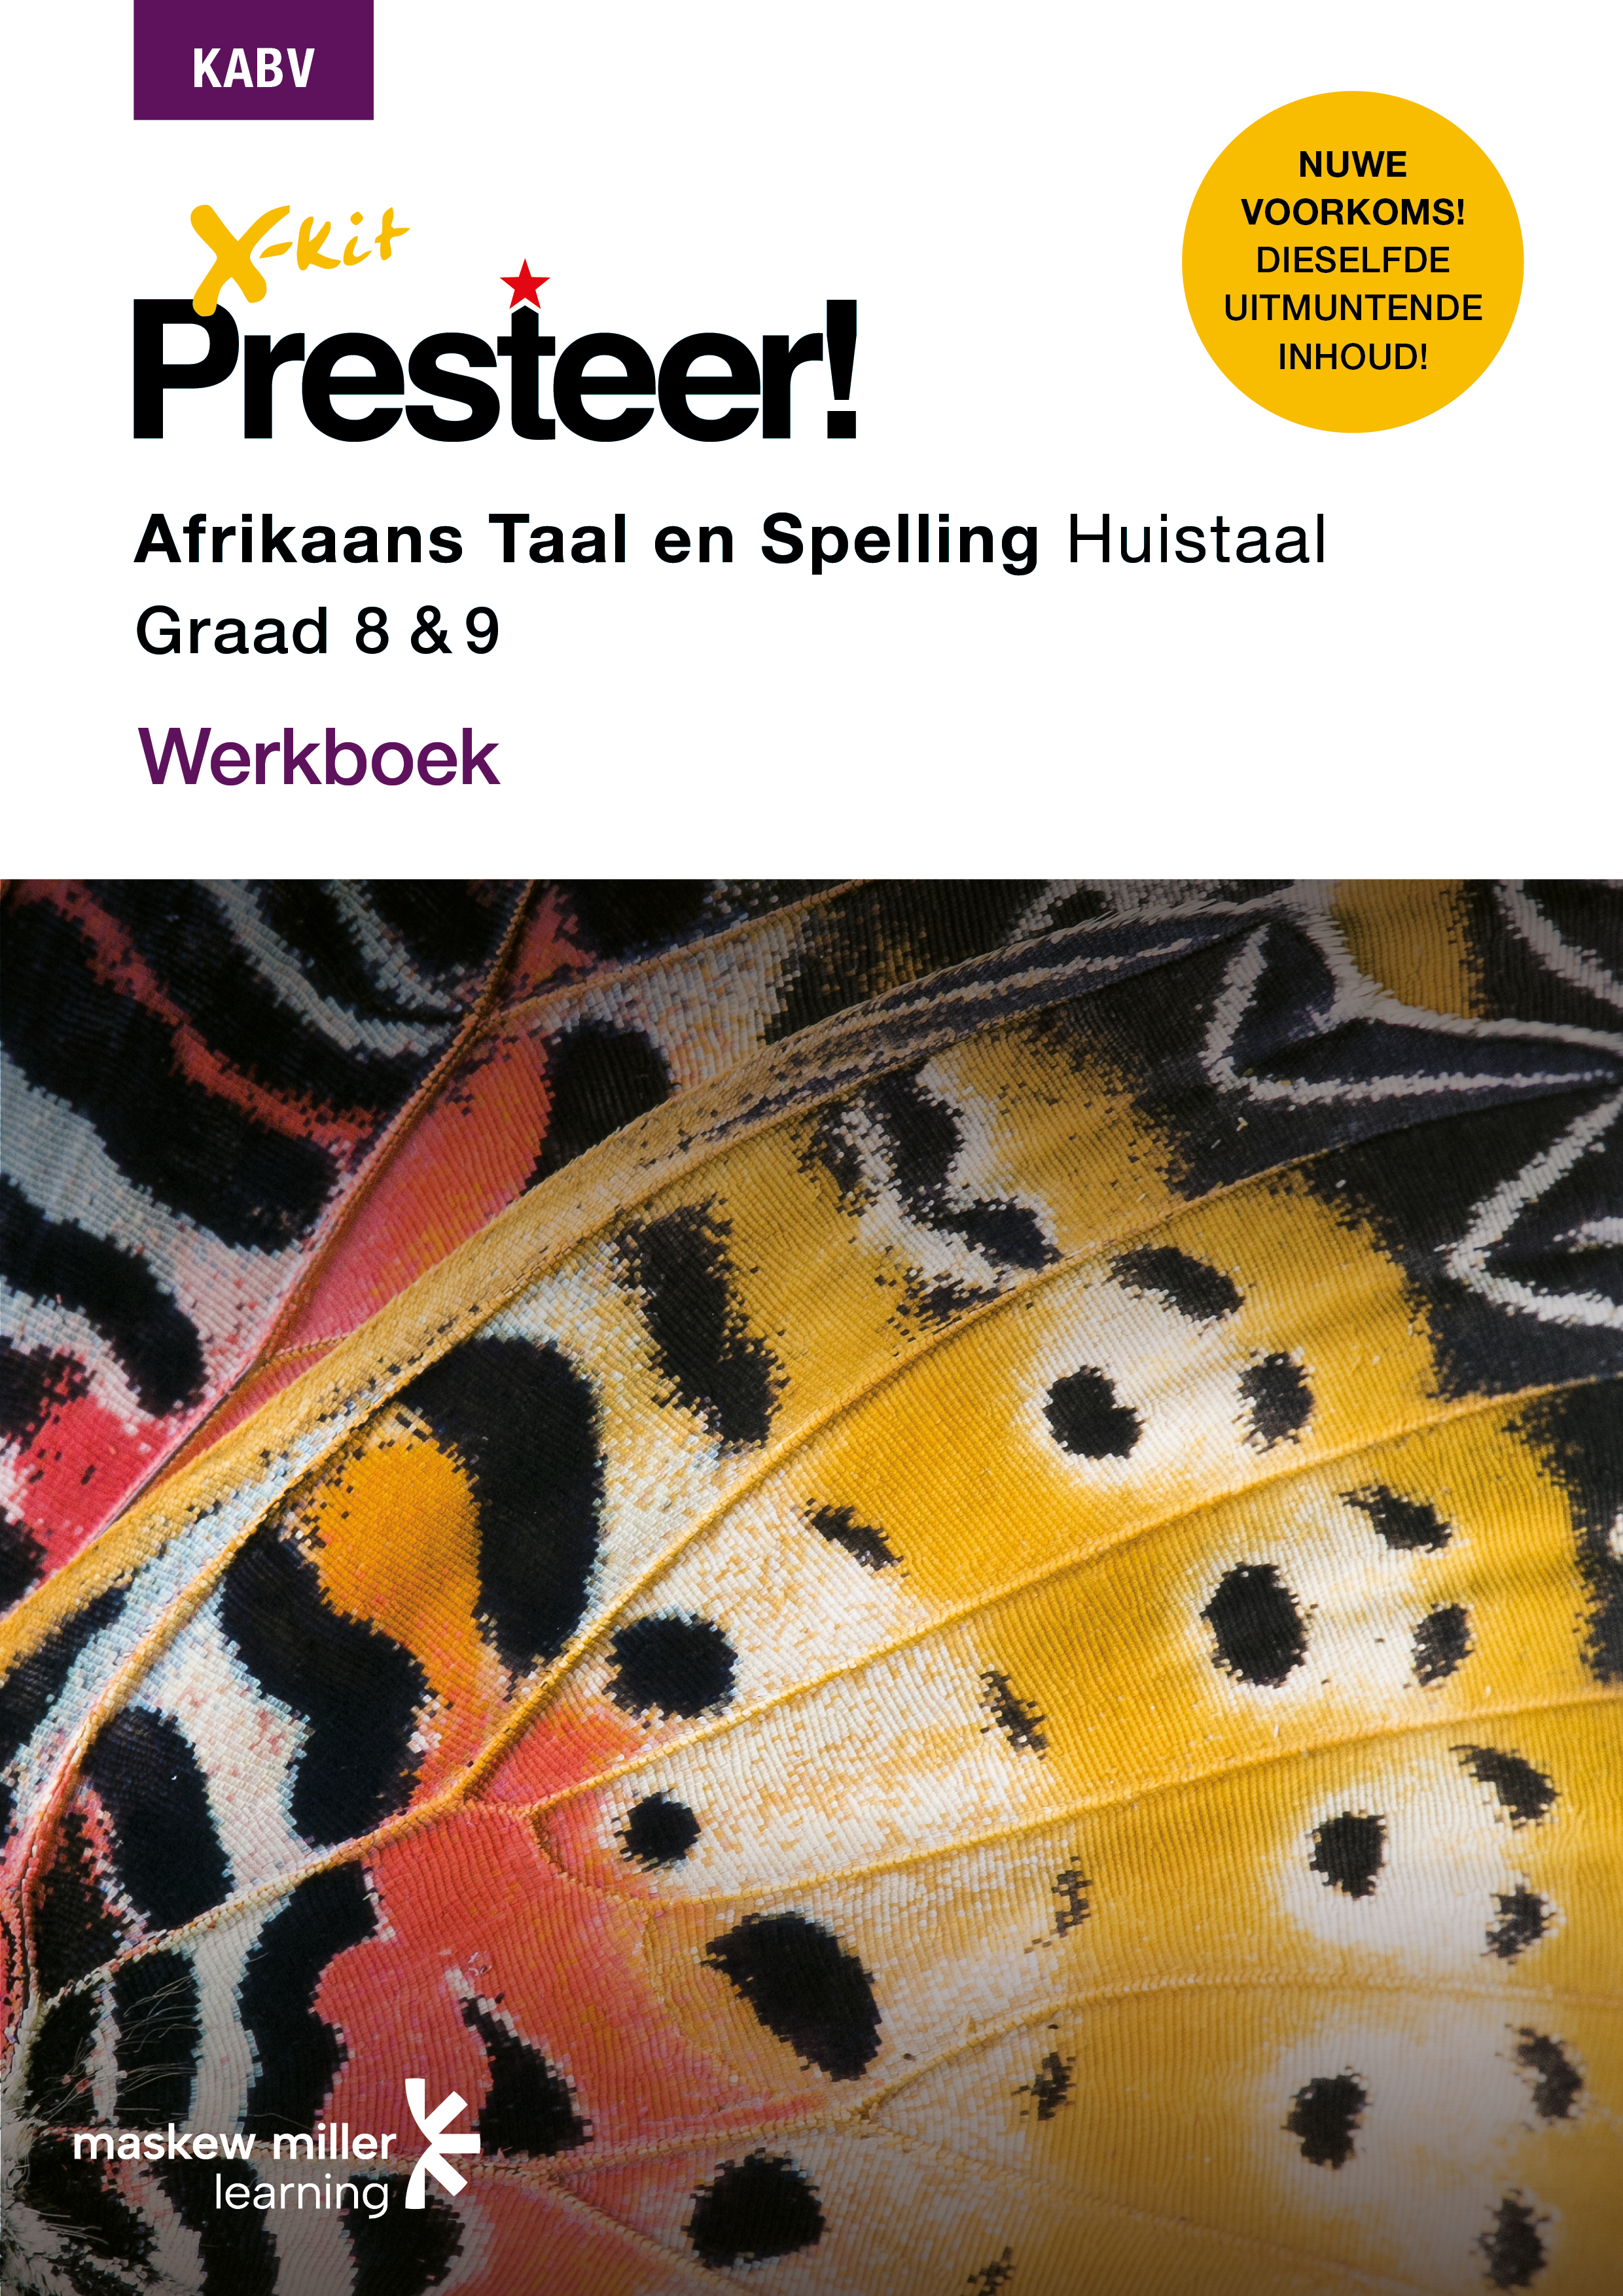 Picture of X-Kit Presteer! Afrikaans Taal en Spelling Huistaal Werkboek Grade 8 & 9 : Grade 8 - 9